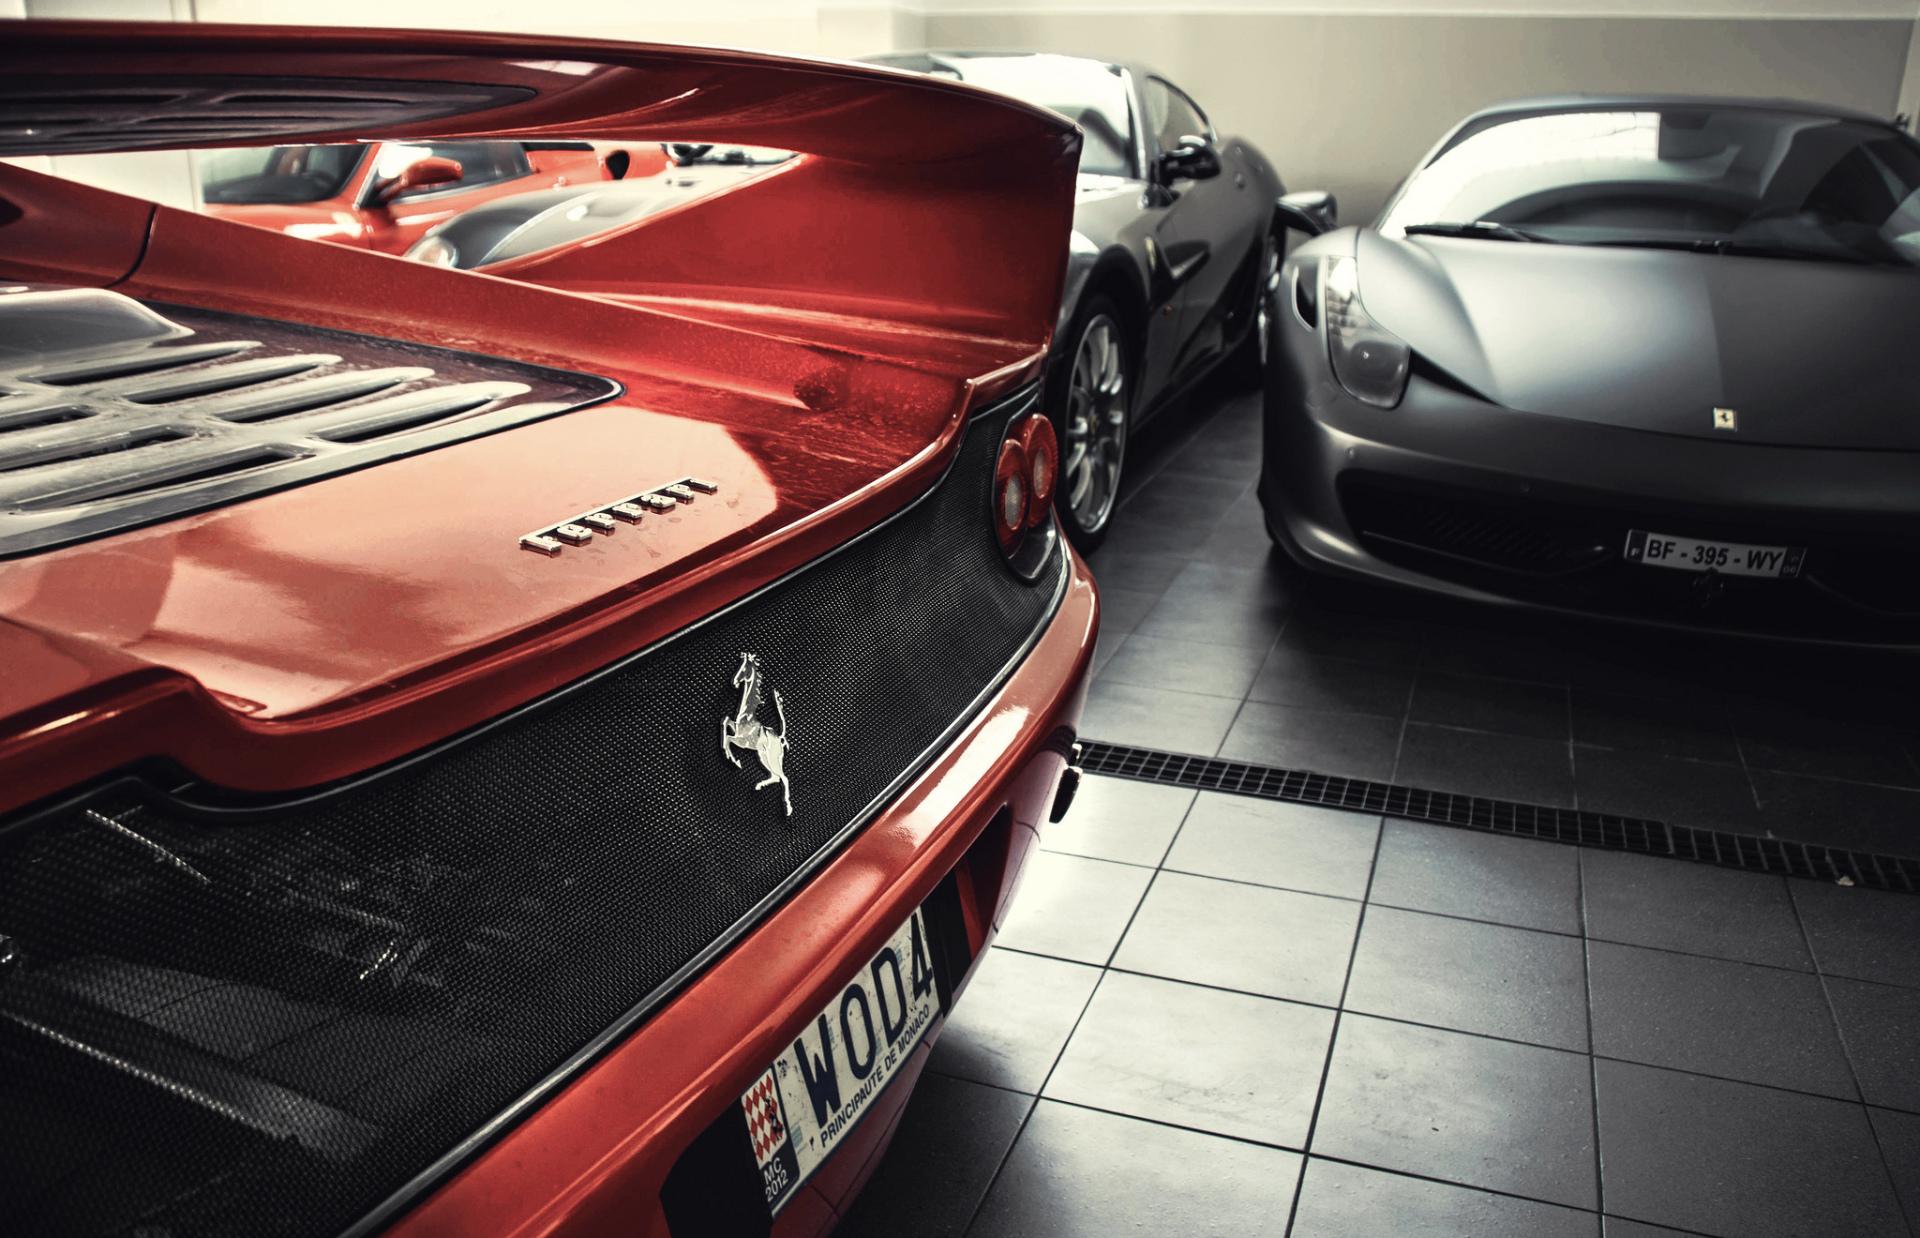 Ferrari F50 at 1600 x 1200 size wallpapers HD quality